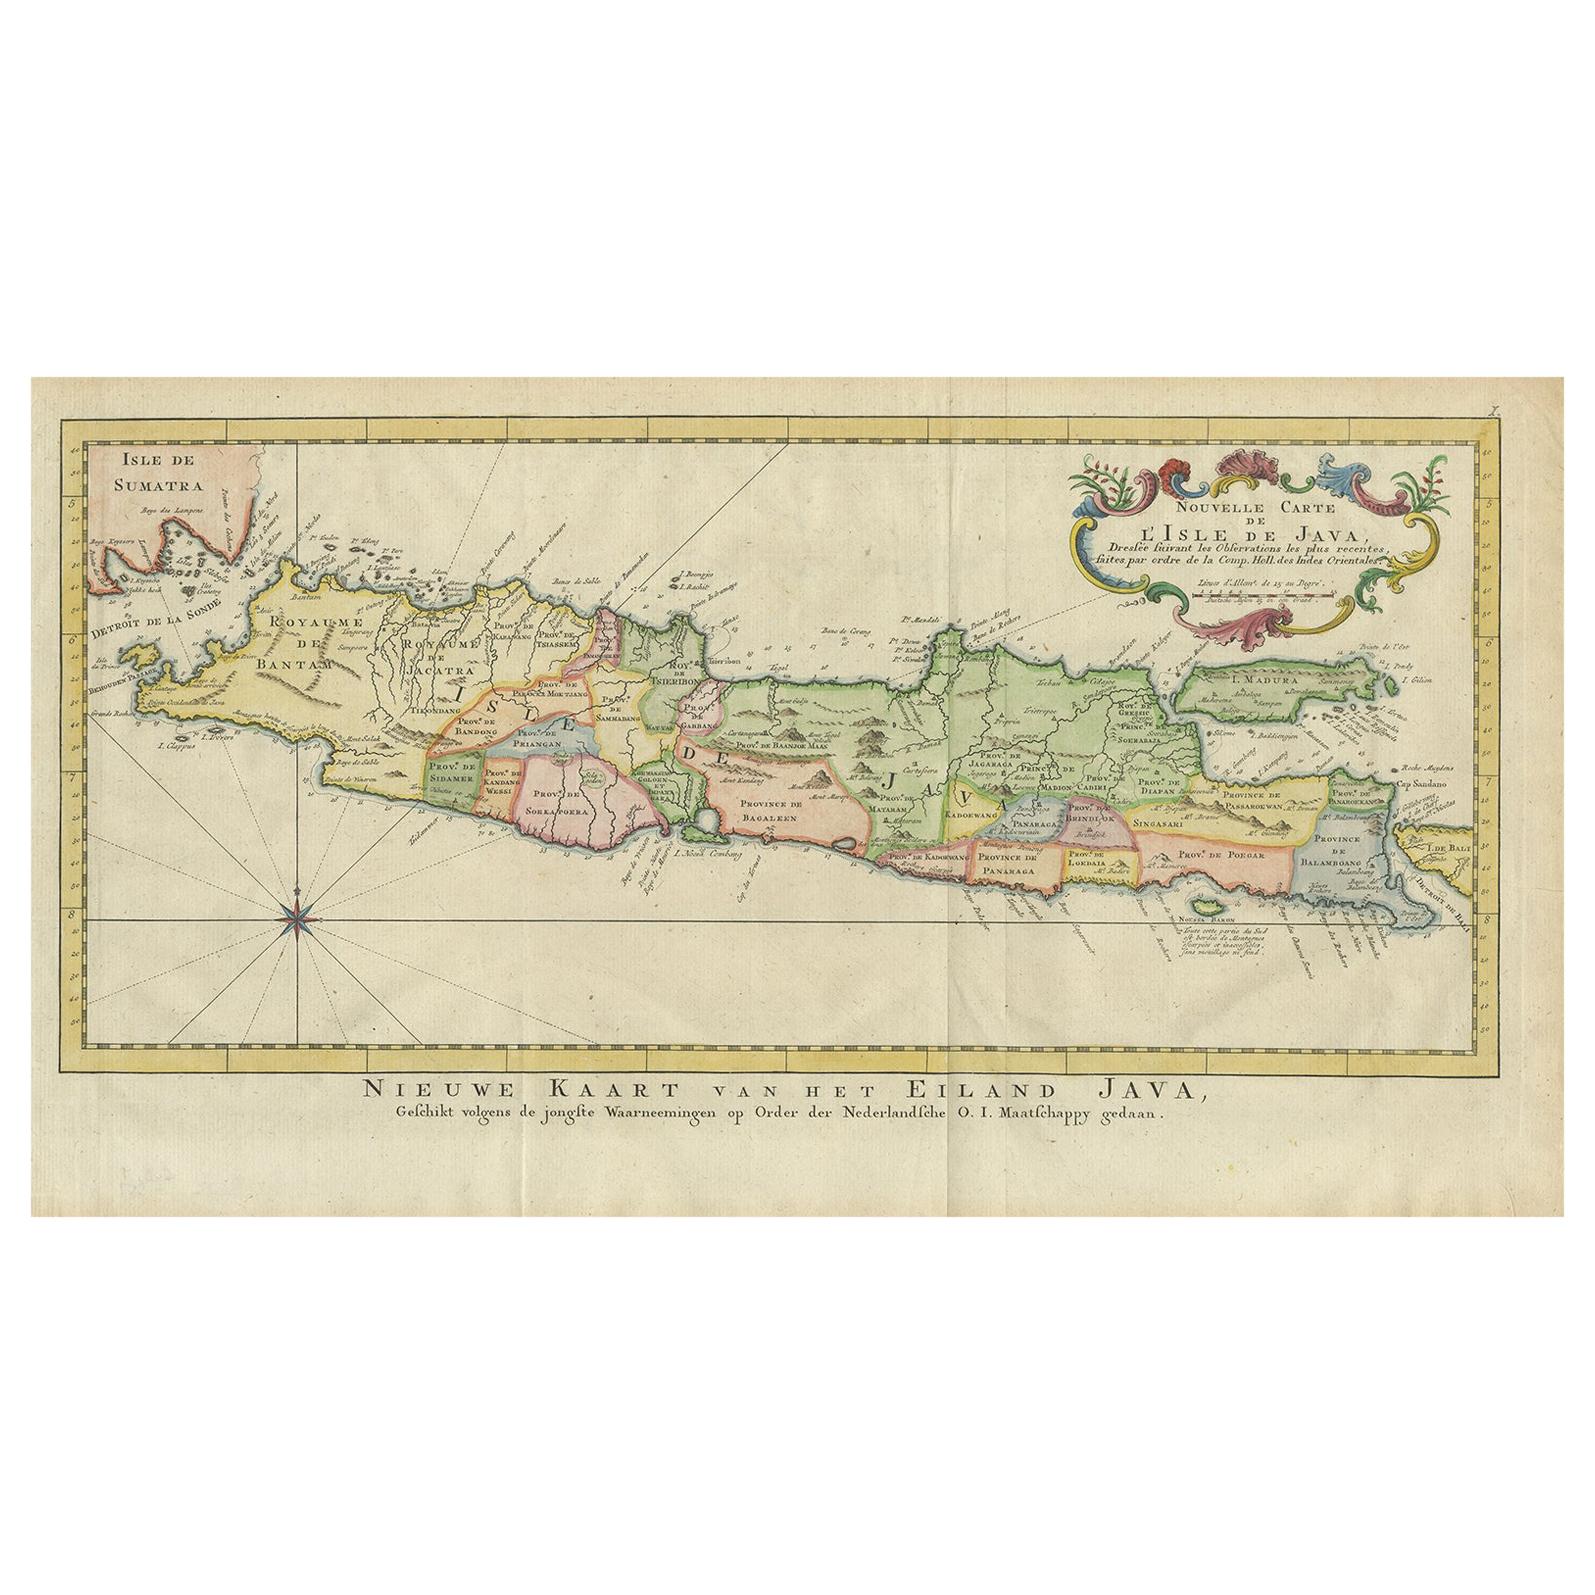 Carte ancienne de Java, Indonésie, datant d'environ 1770